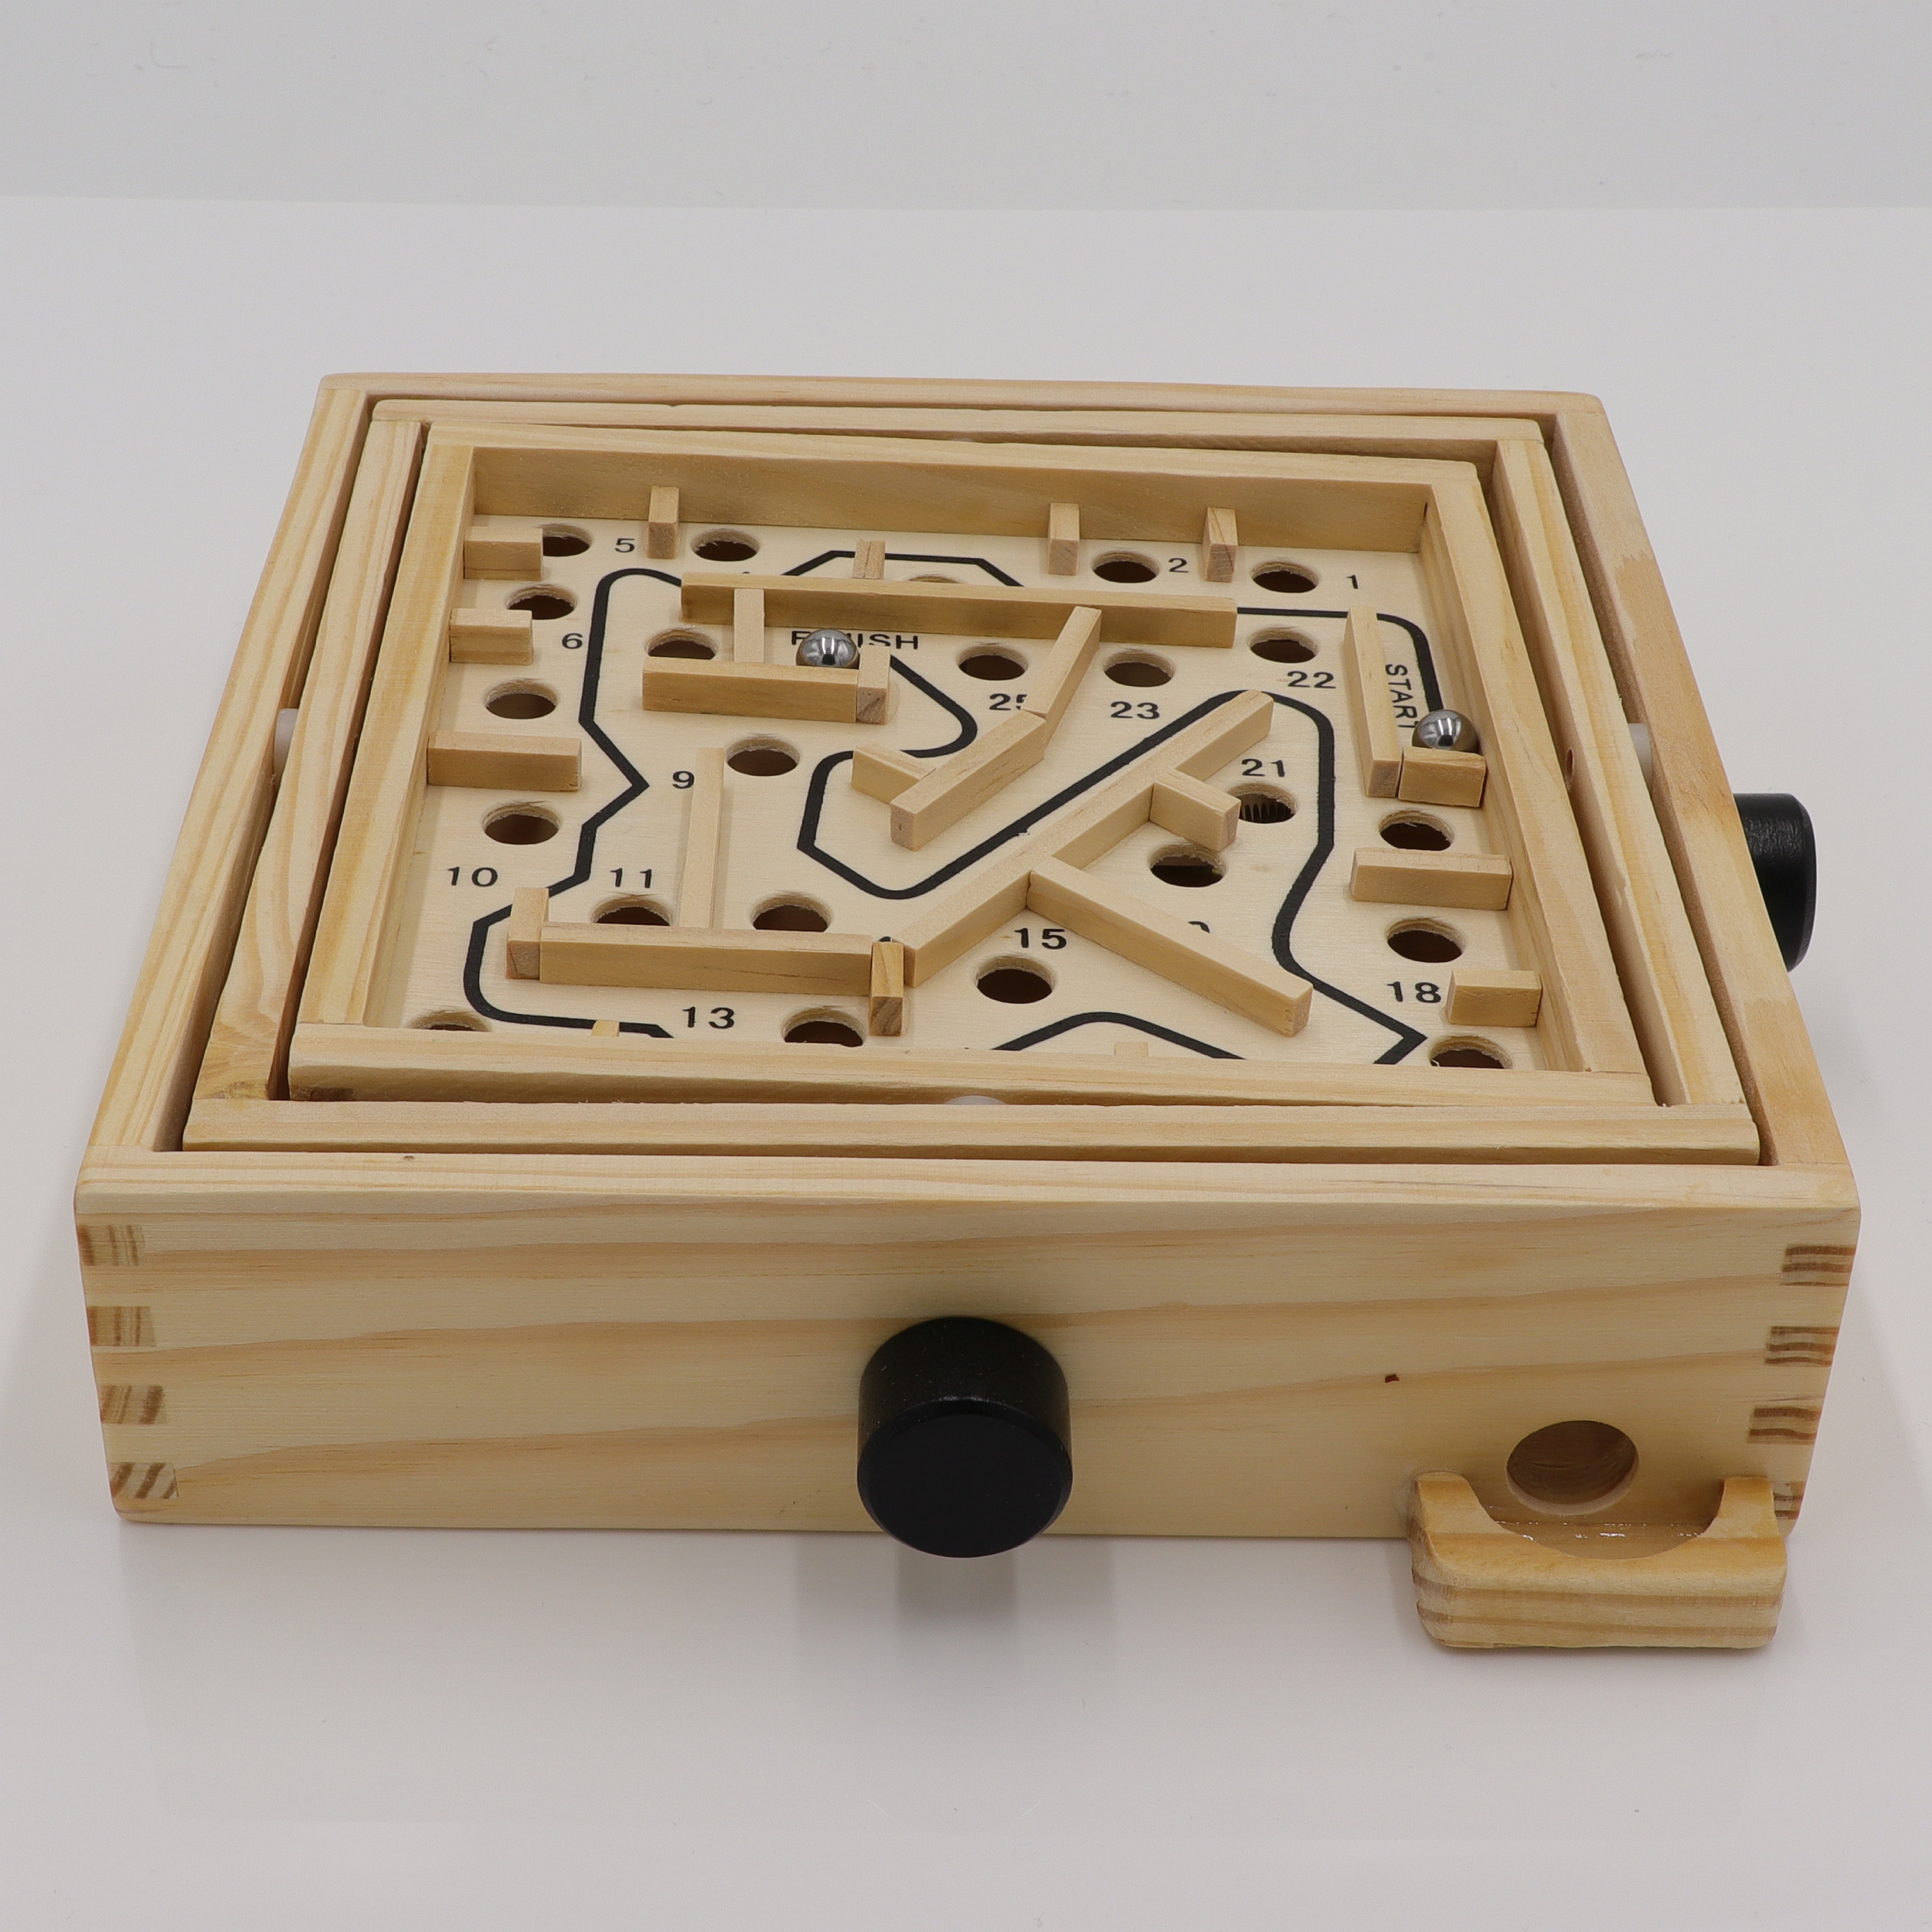 Labyrinth - Geschicklichkeitsspiel aus Holz - Auge und Hand Koordination